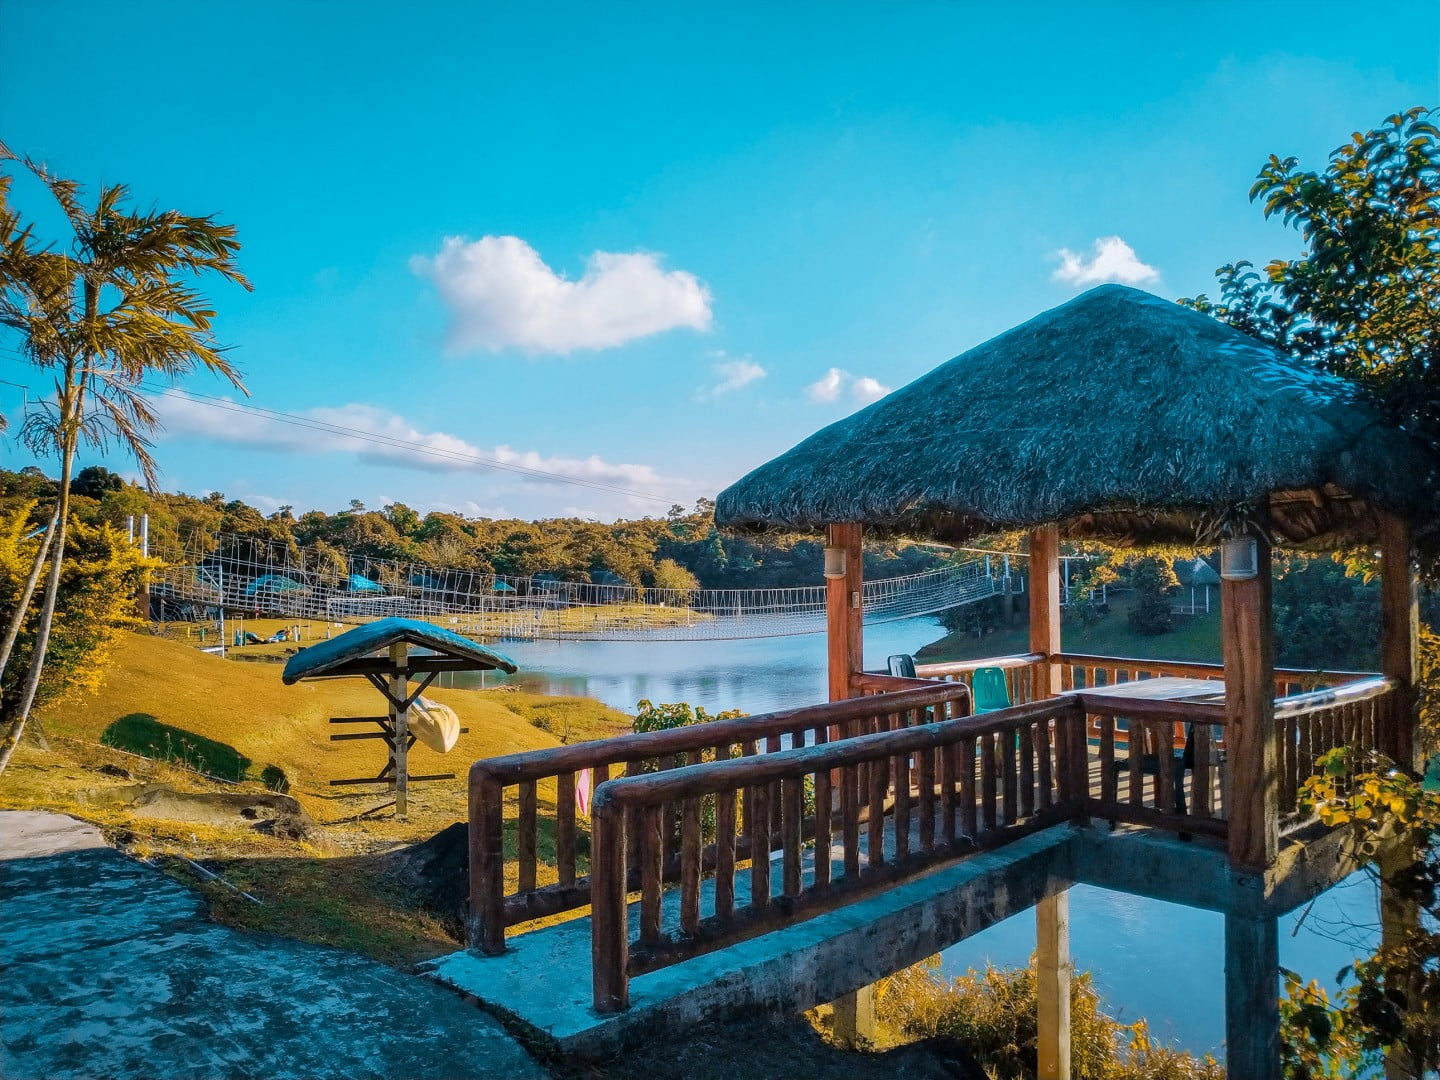 Mountain Lake Resort: A Hidden Gem in Cavinti, Laguna